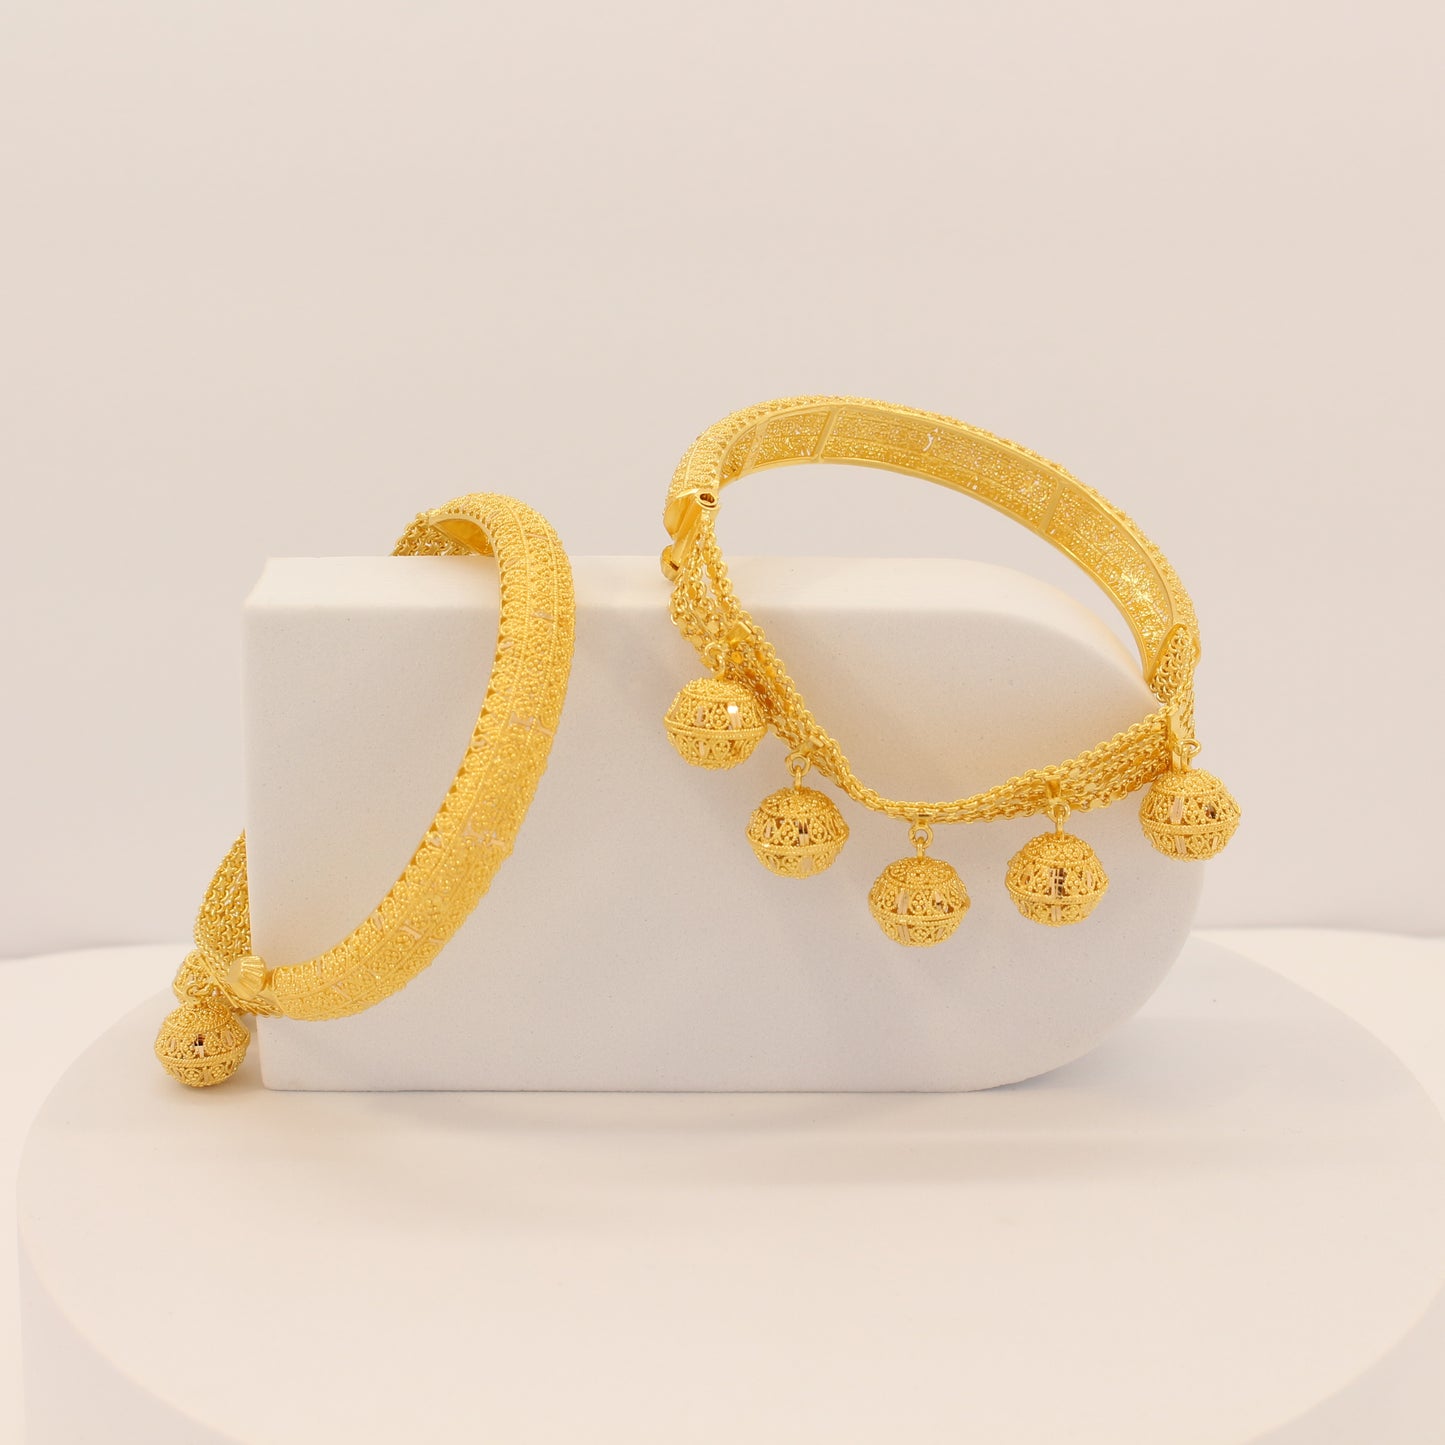 21K Gold Indian Style Cuff Bracelets